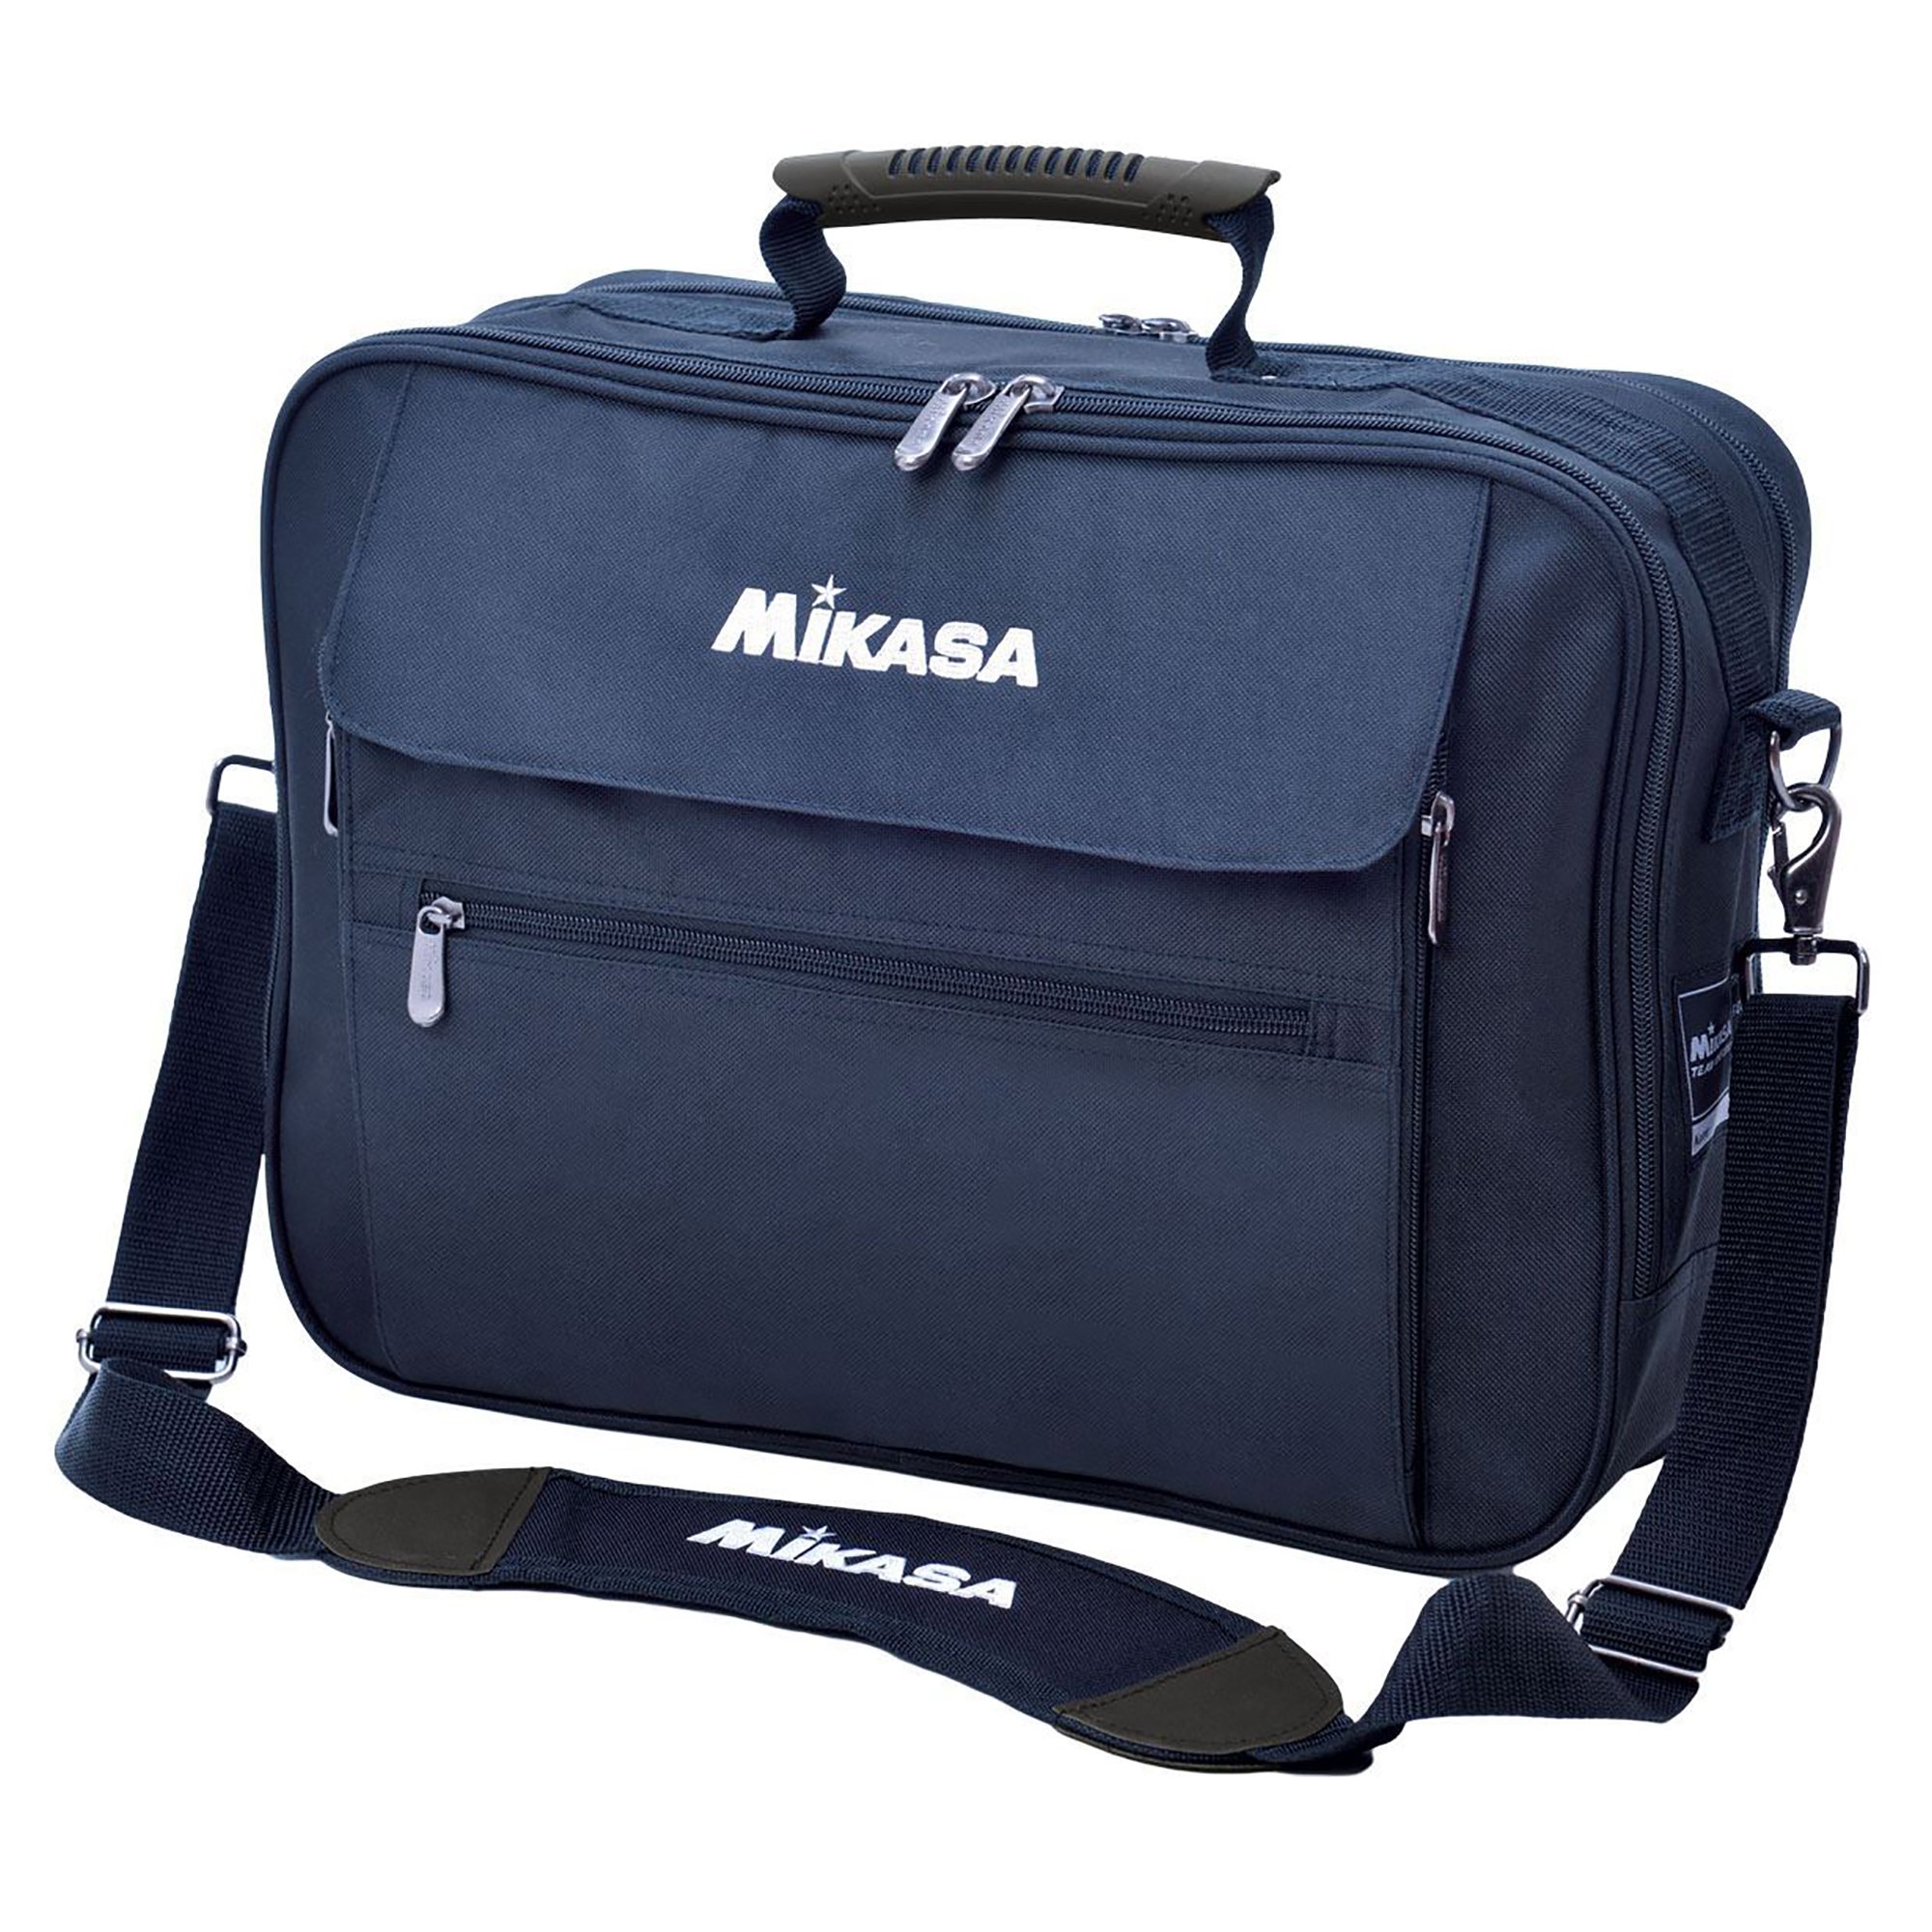 Mikasa Laptop Bag